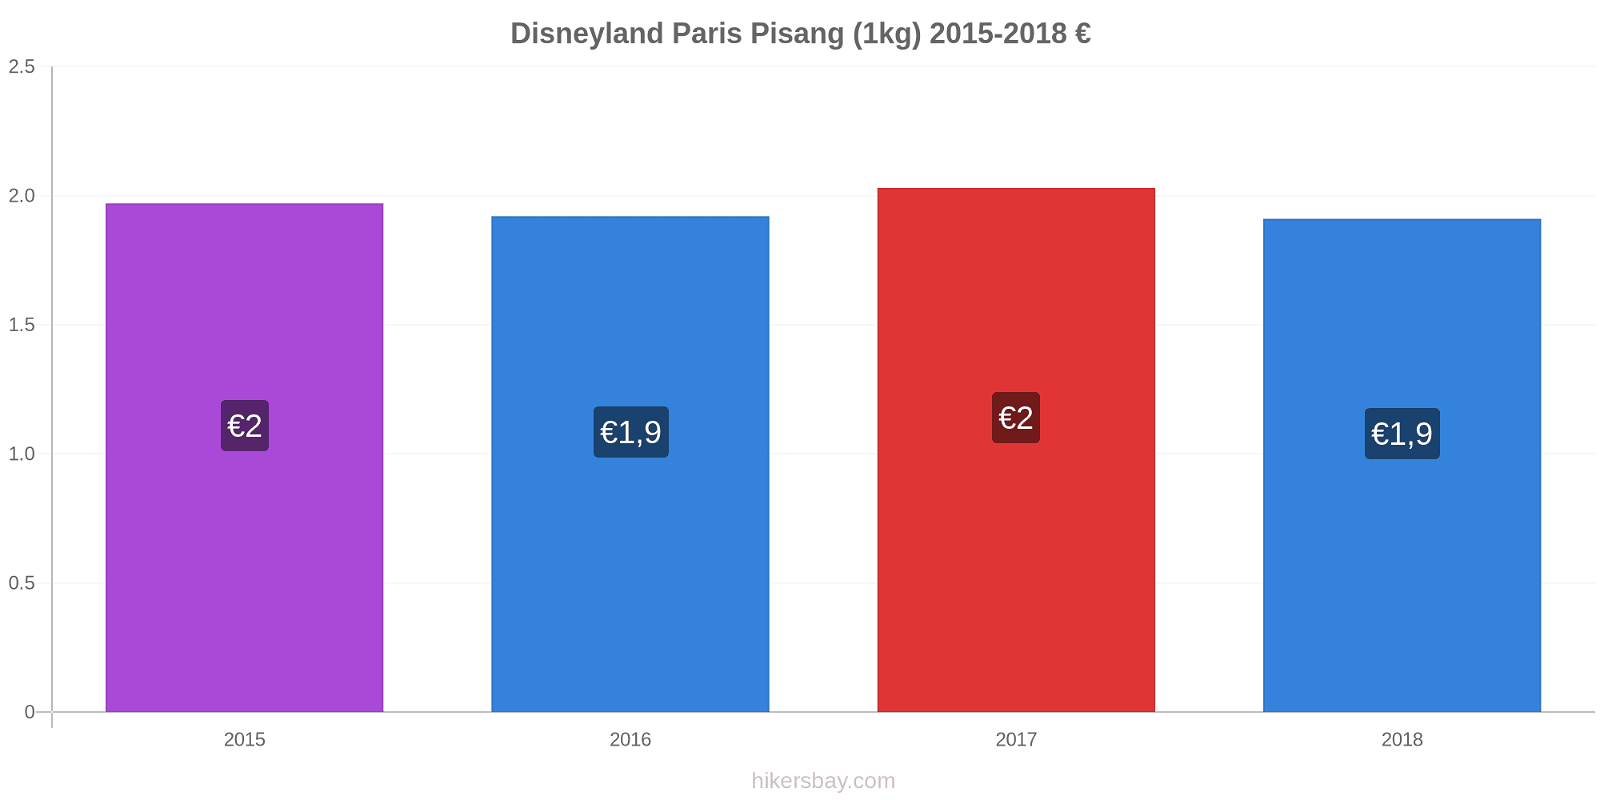 Disneyland Paris perubahan harga Pisang (1kg) hikersbay.com